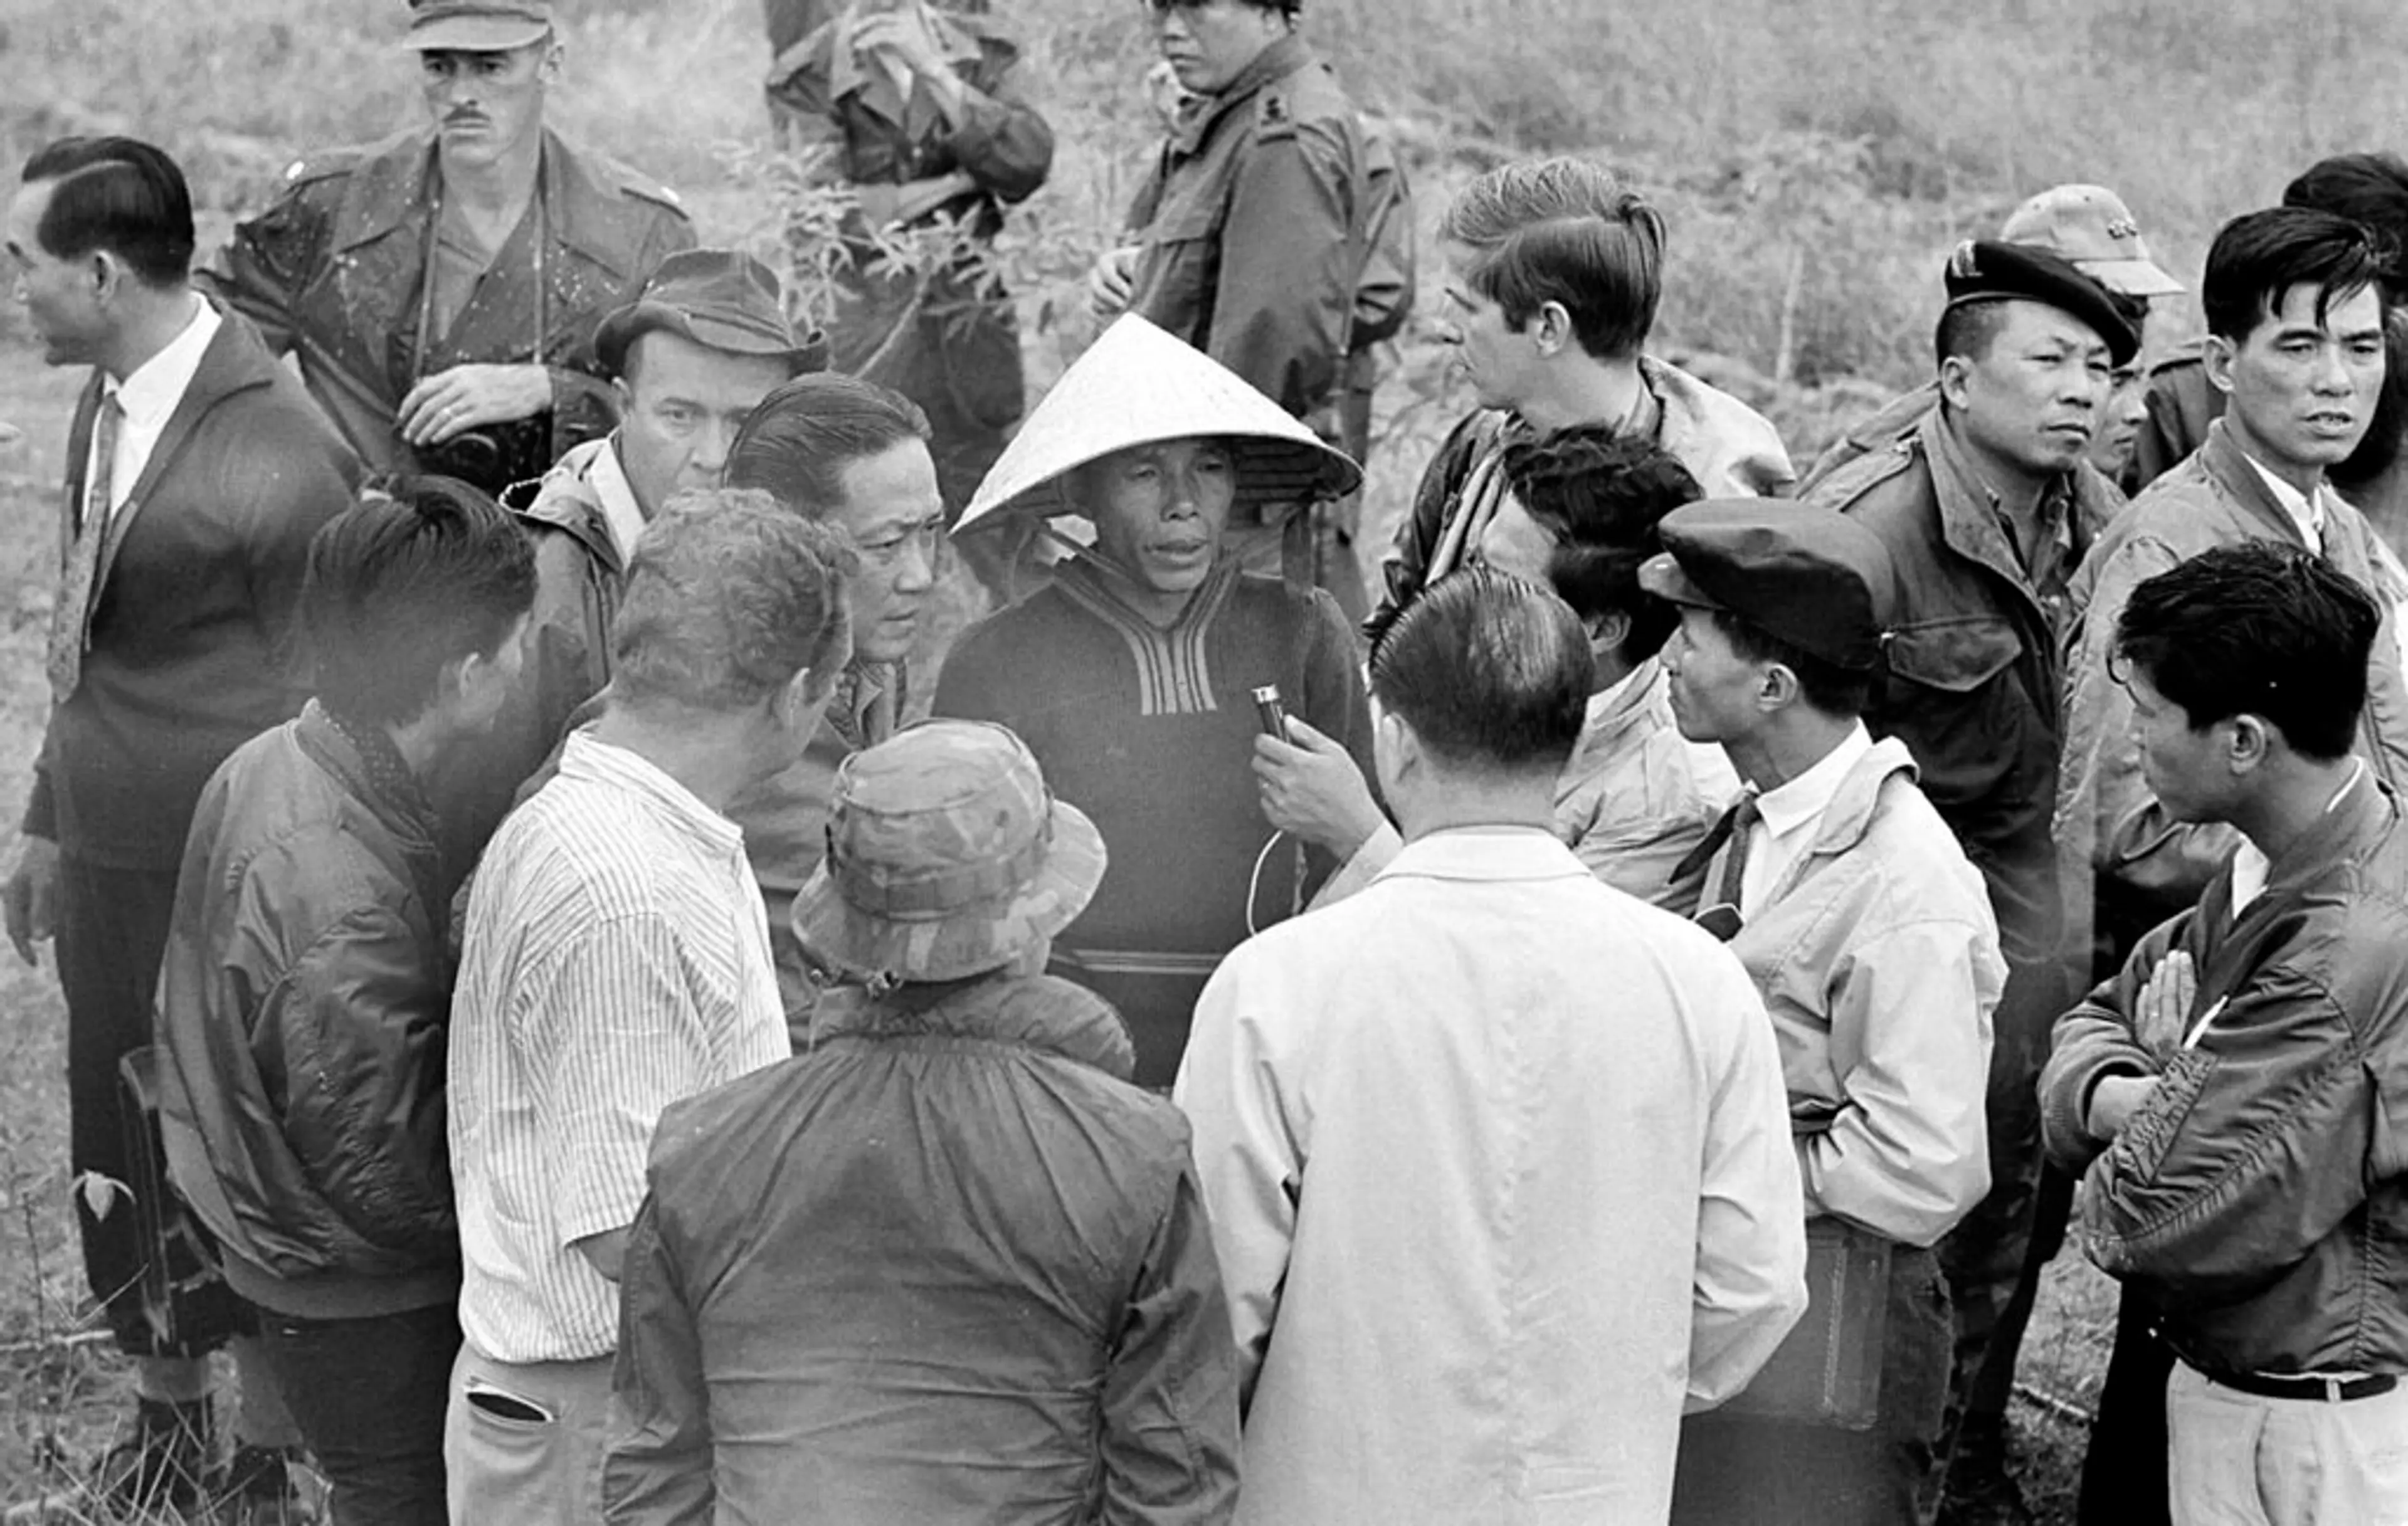 Vietnam War 1969 - My Lai Massacre Witness